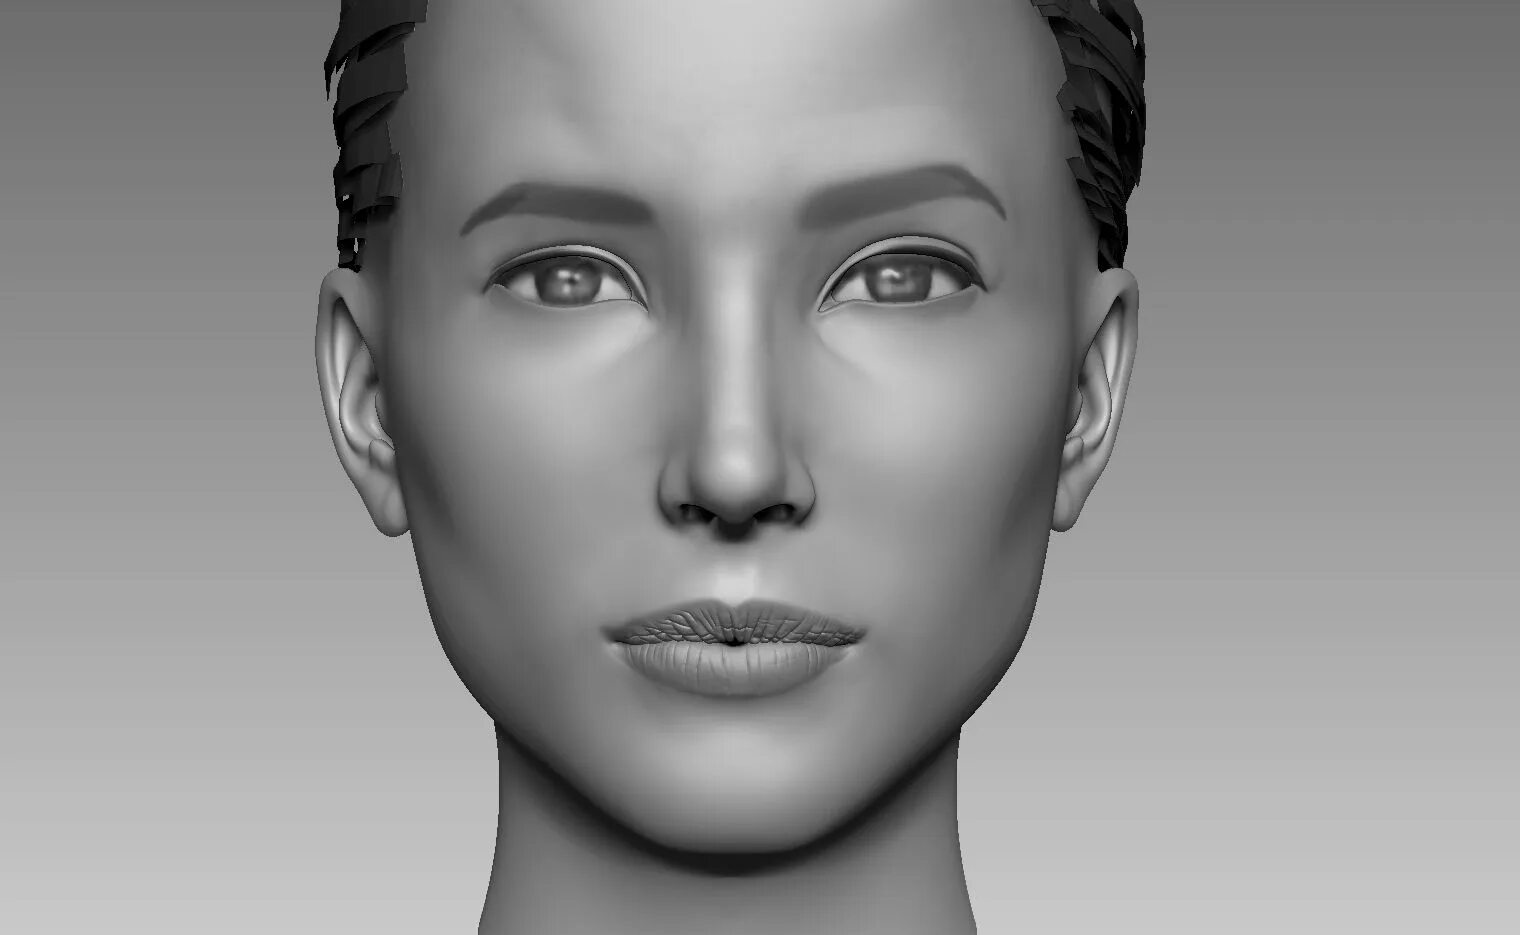 Mesh head 3d model. Збраш 3д. 3д моделирование в Zbrush. Модель лица человека. Main obj